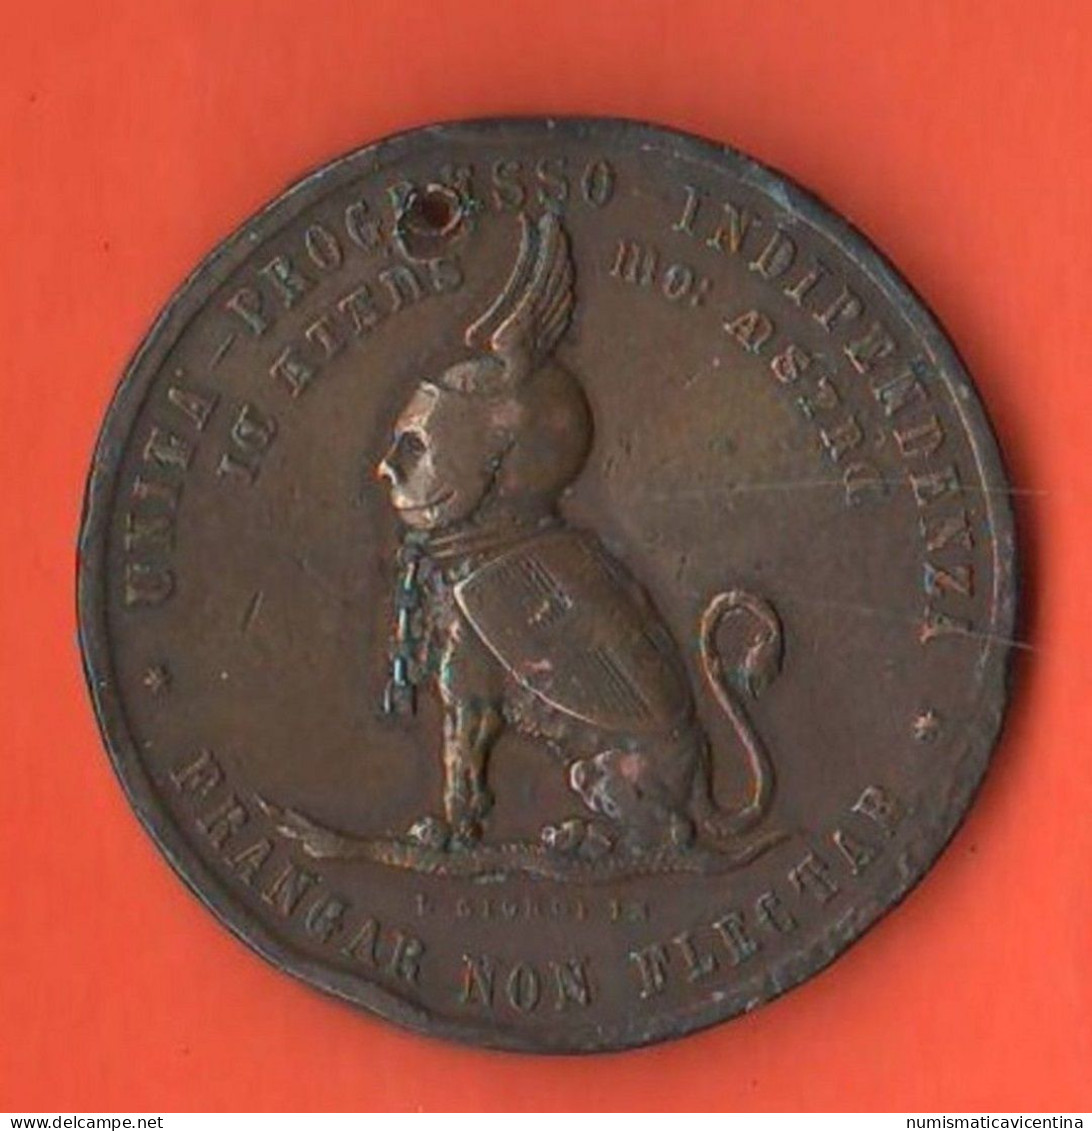 Italia Medaglia Risorgimento Ai Collaboratori E Veterani Ex Granducato Di Toscana 1884 Risorgimentali Copper Medal - Italy